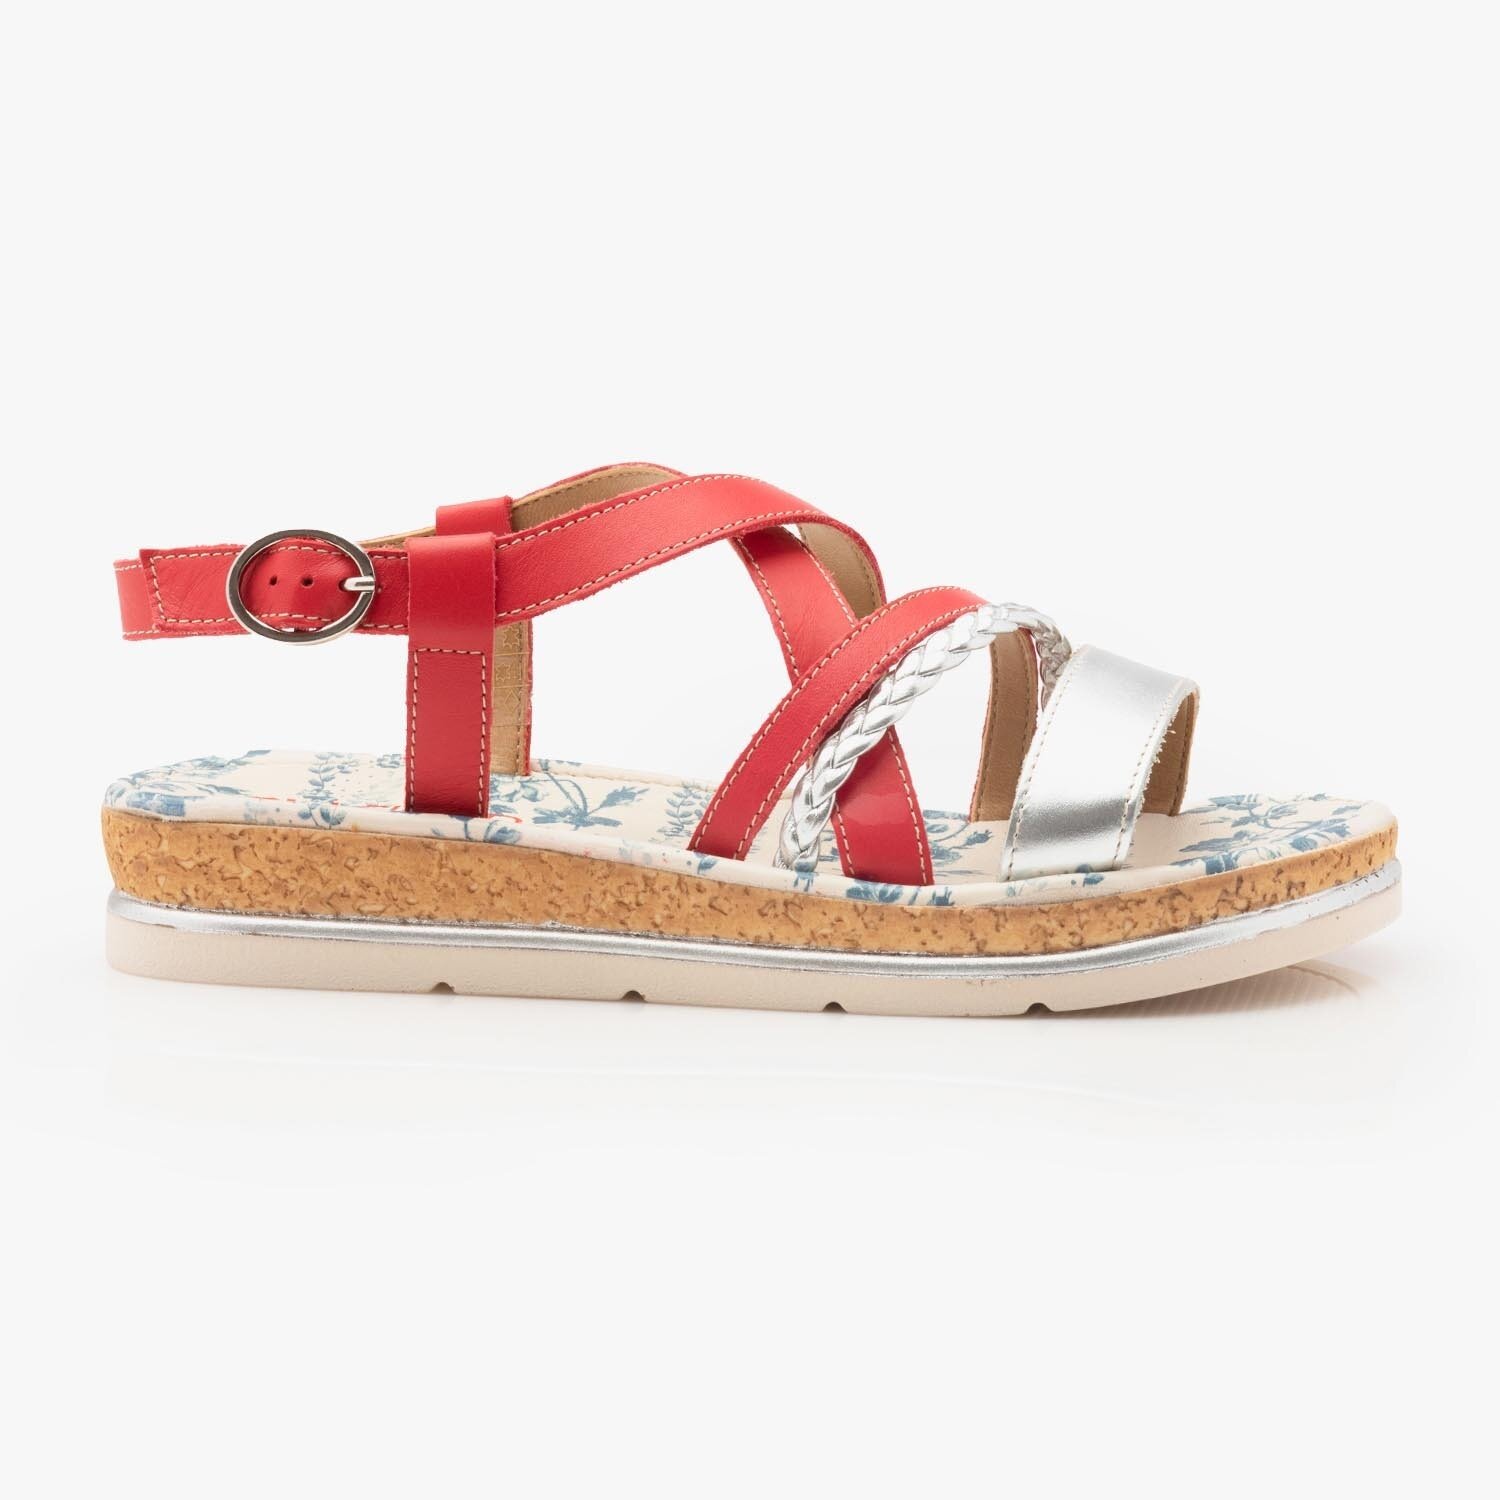 Sandale dama cu talpa joasa din piele naturala - 491 rosu box